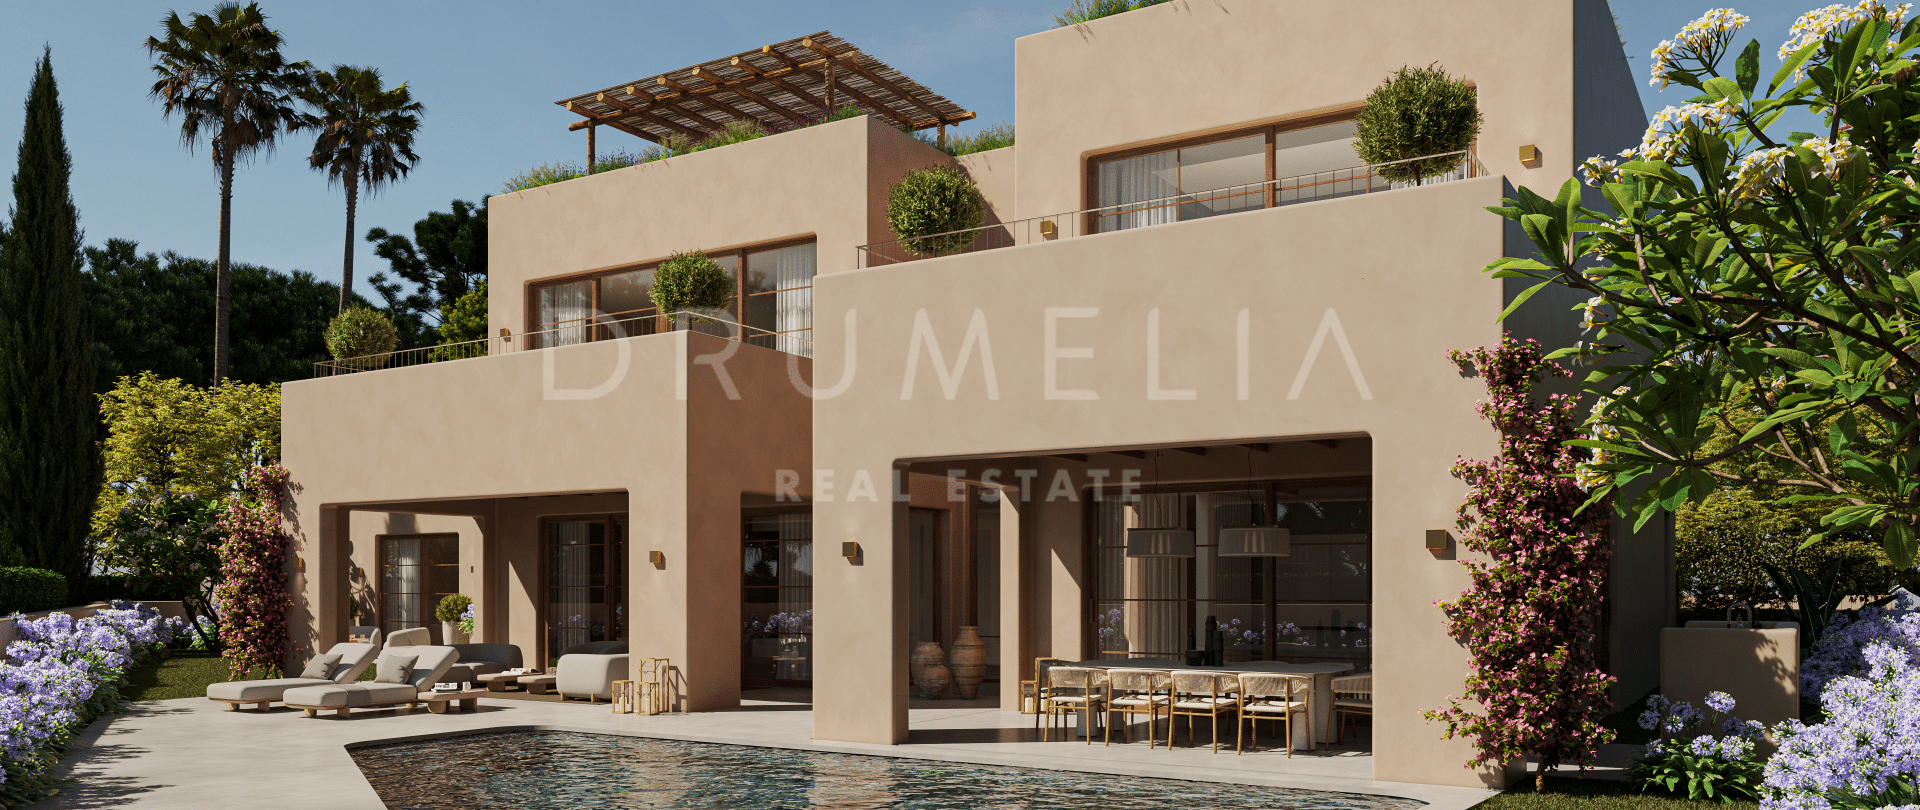 Excepcional plot and bespoke Architecturally unique villa project in Casa Blanca, Marbella